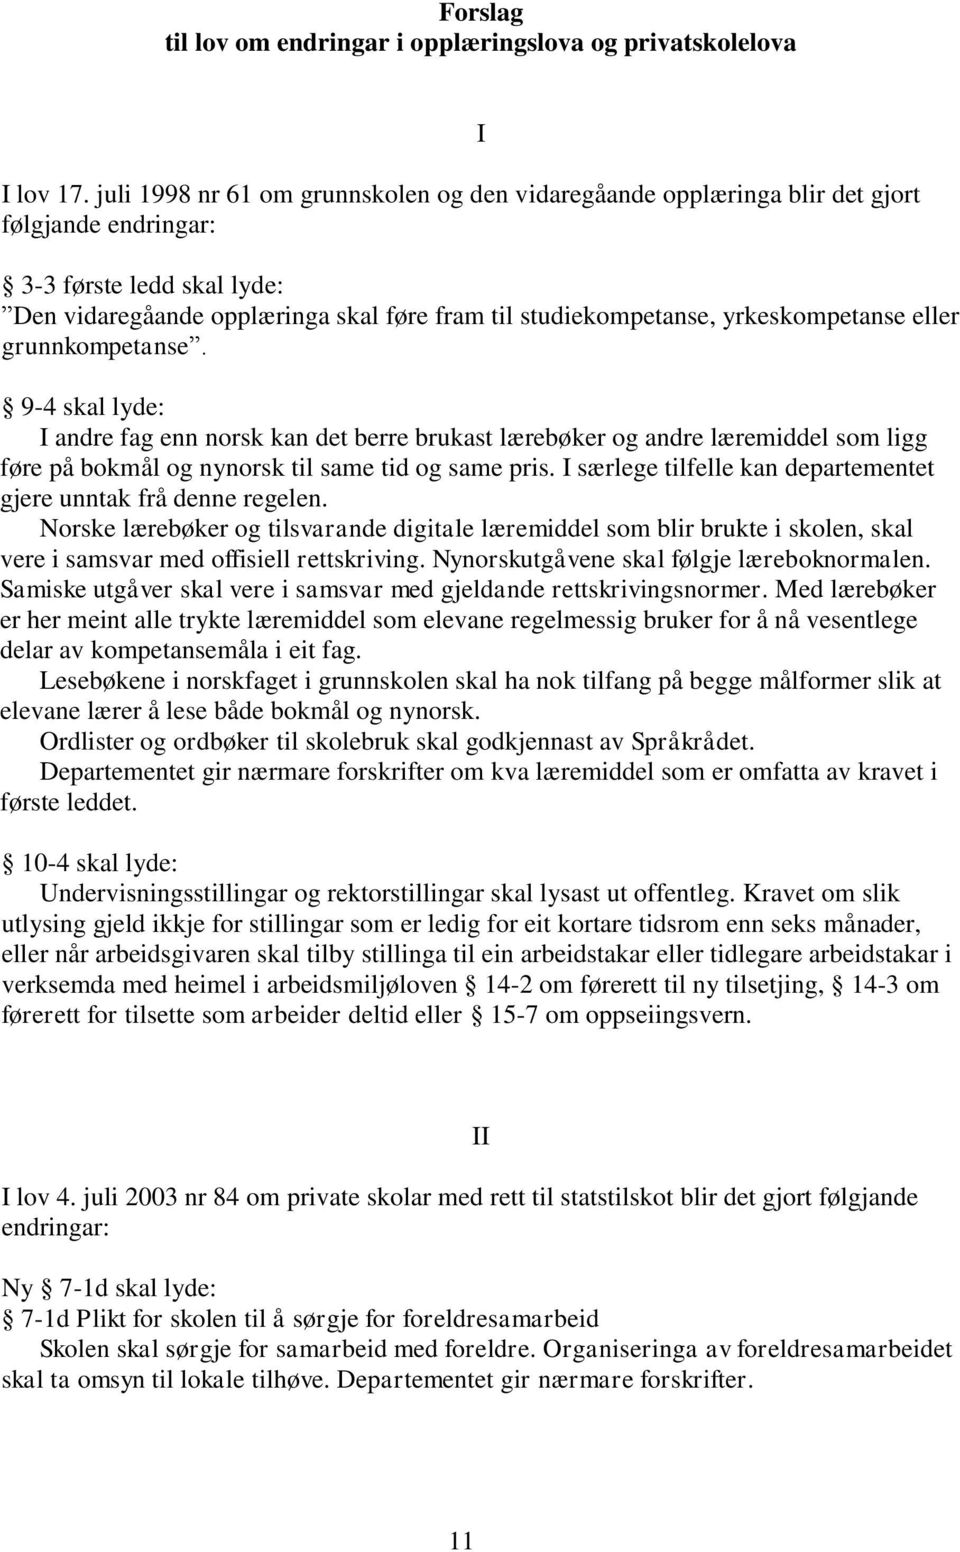 yrkeskompetanse eller grunnkompetanse. 9-4 skal lyde: I andre fag enn norsk kan det berre brukast lærebøker og andre læremiddel som ligg føre på bokmål og nynorsk til same tid og same pris.